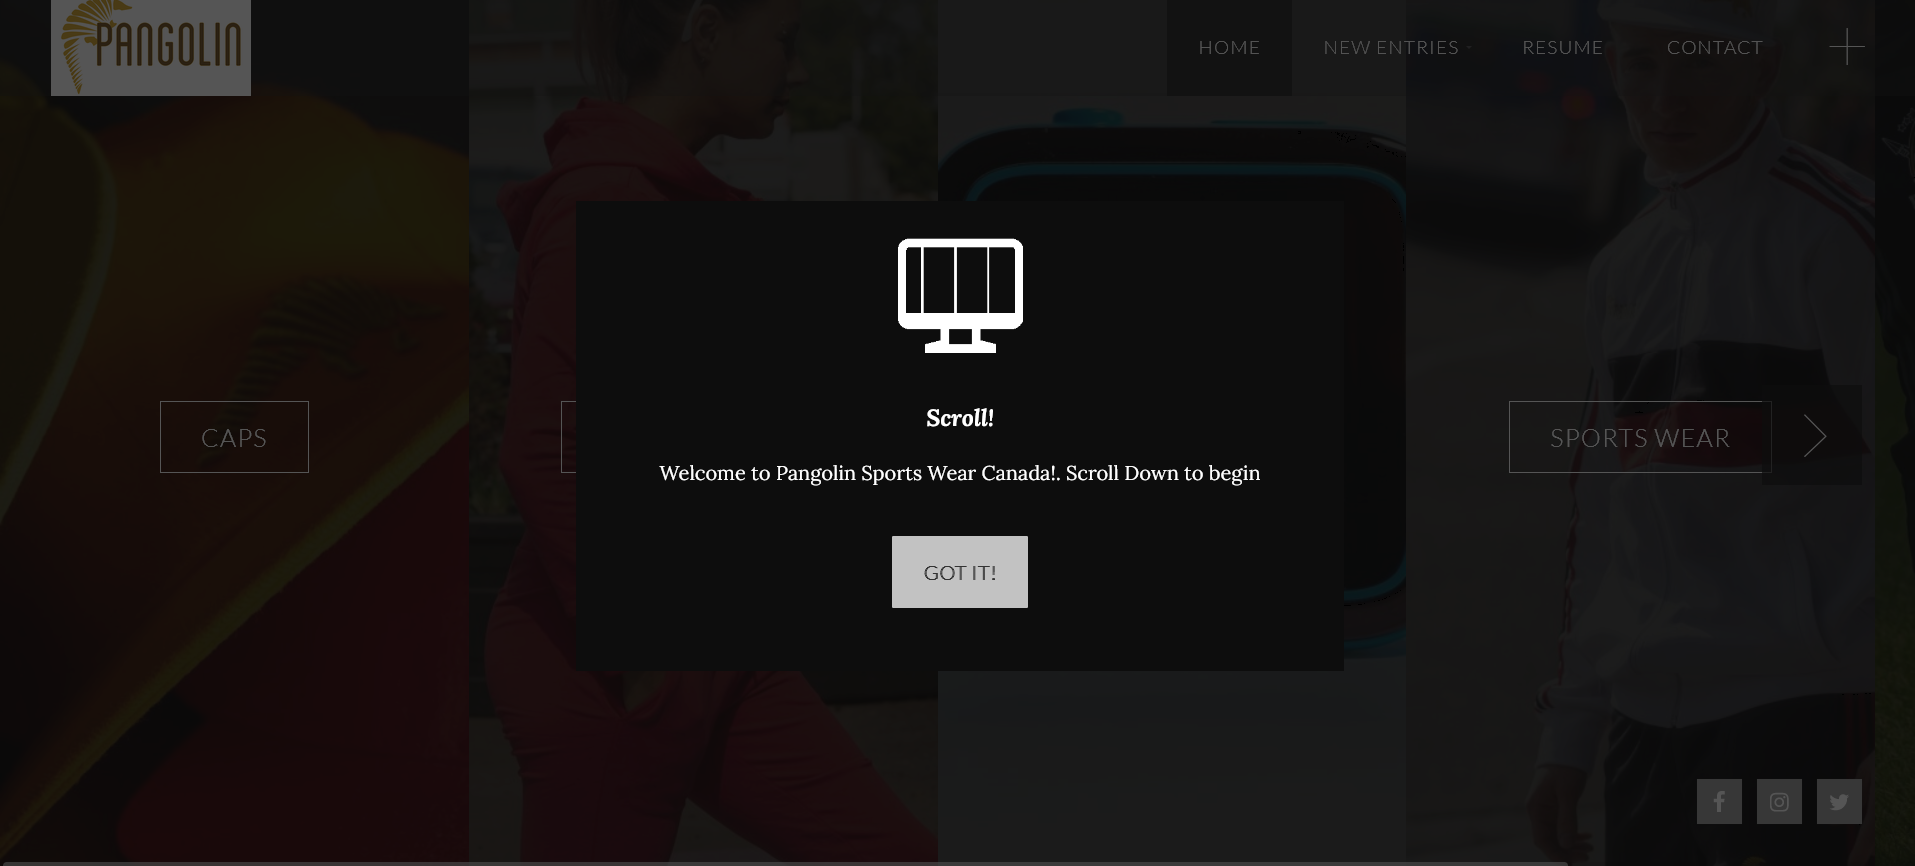 pangolin sportswear website